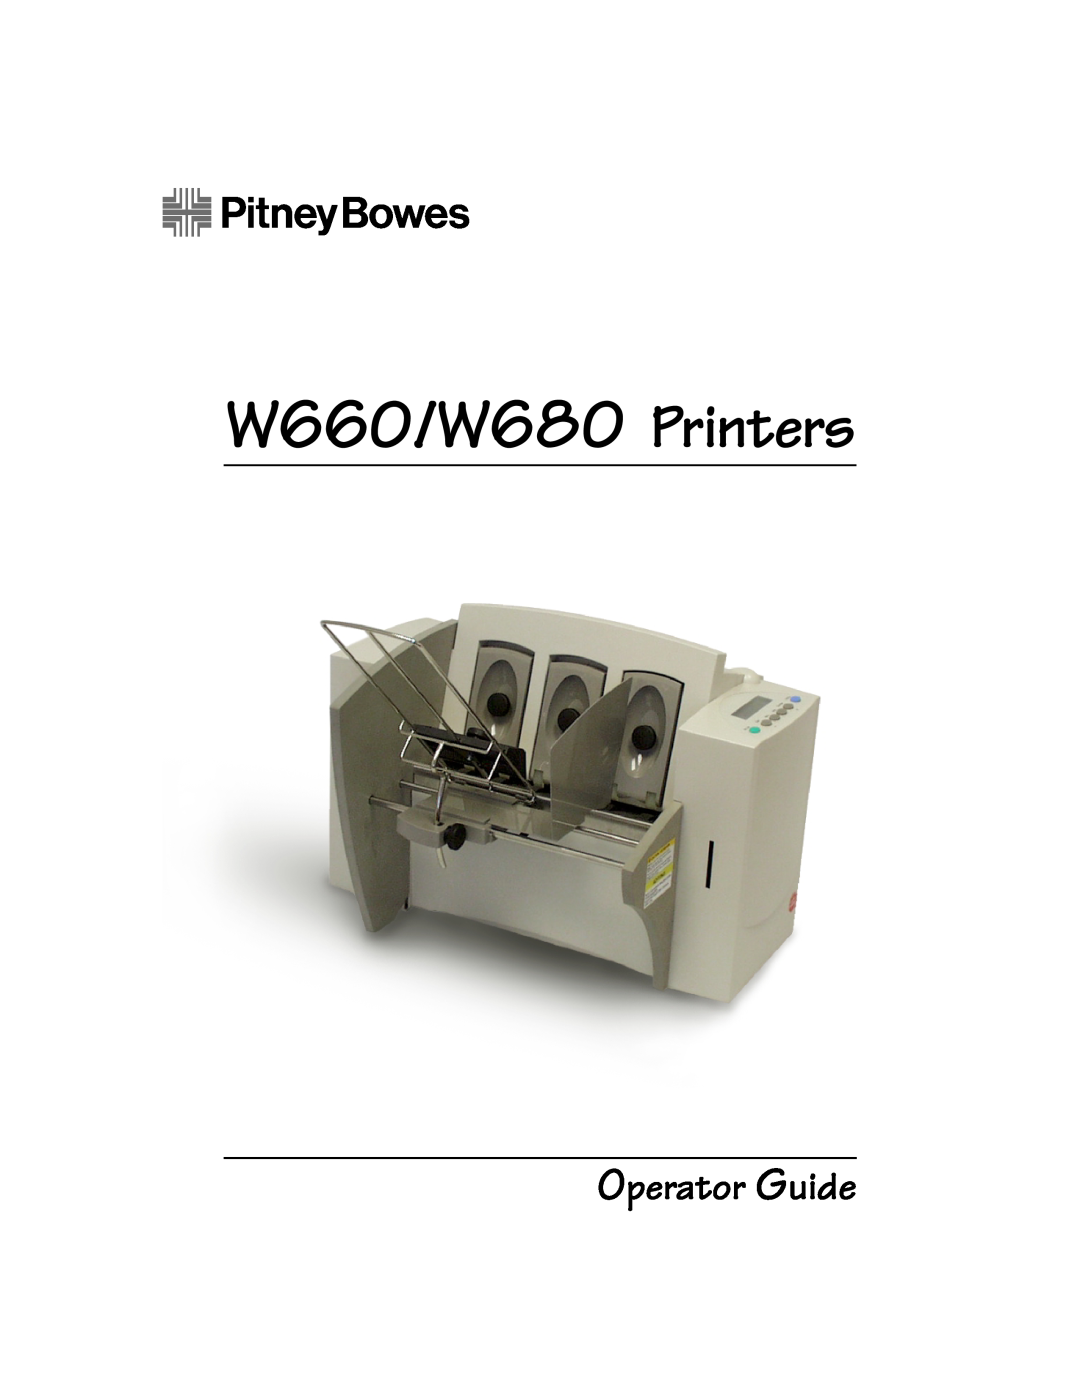 Pitney Bowes W680, W660 manual 